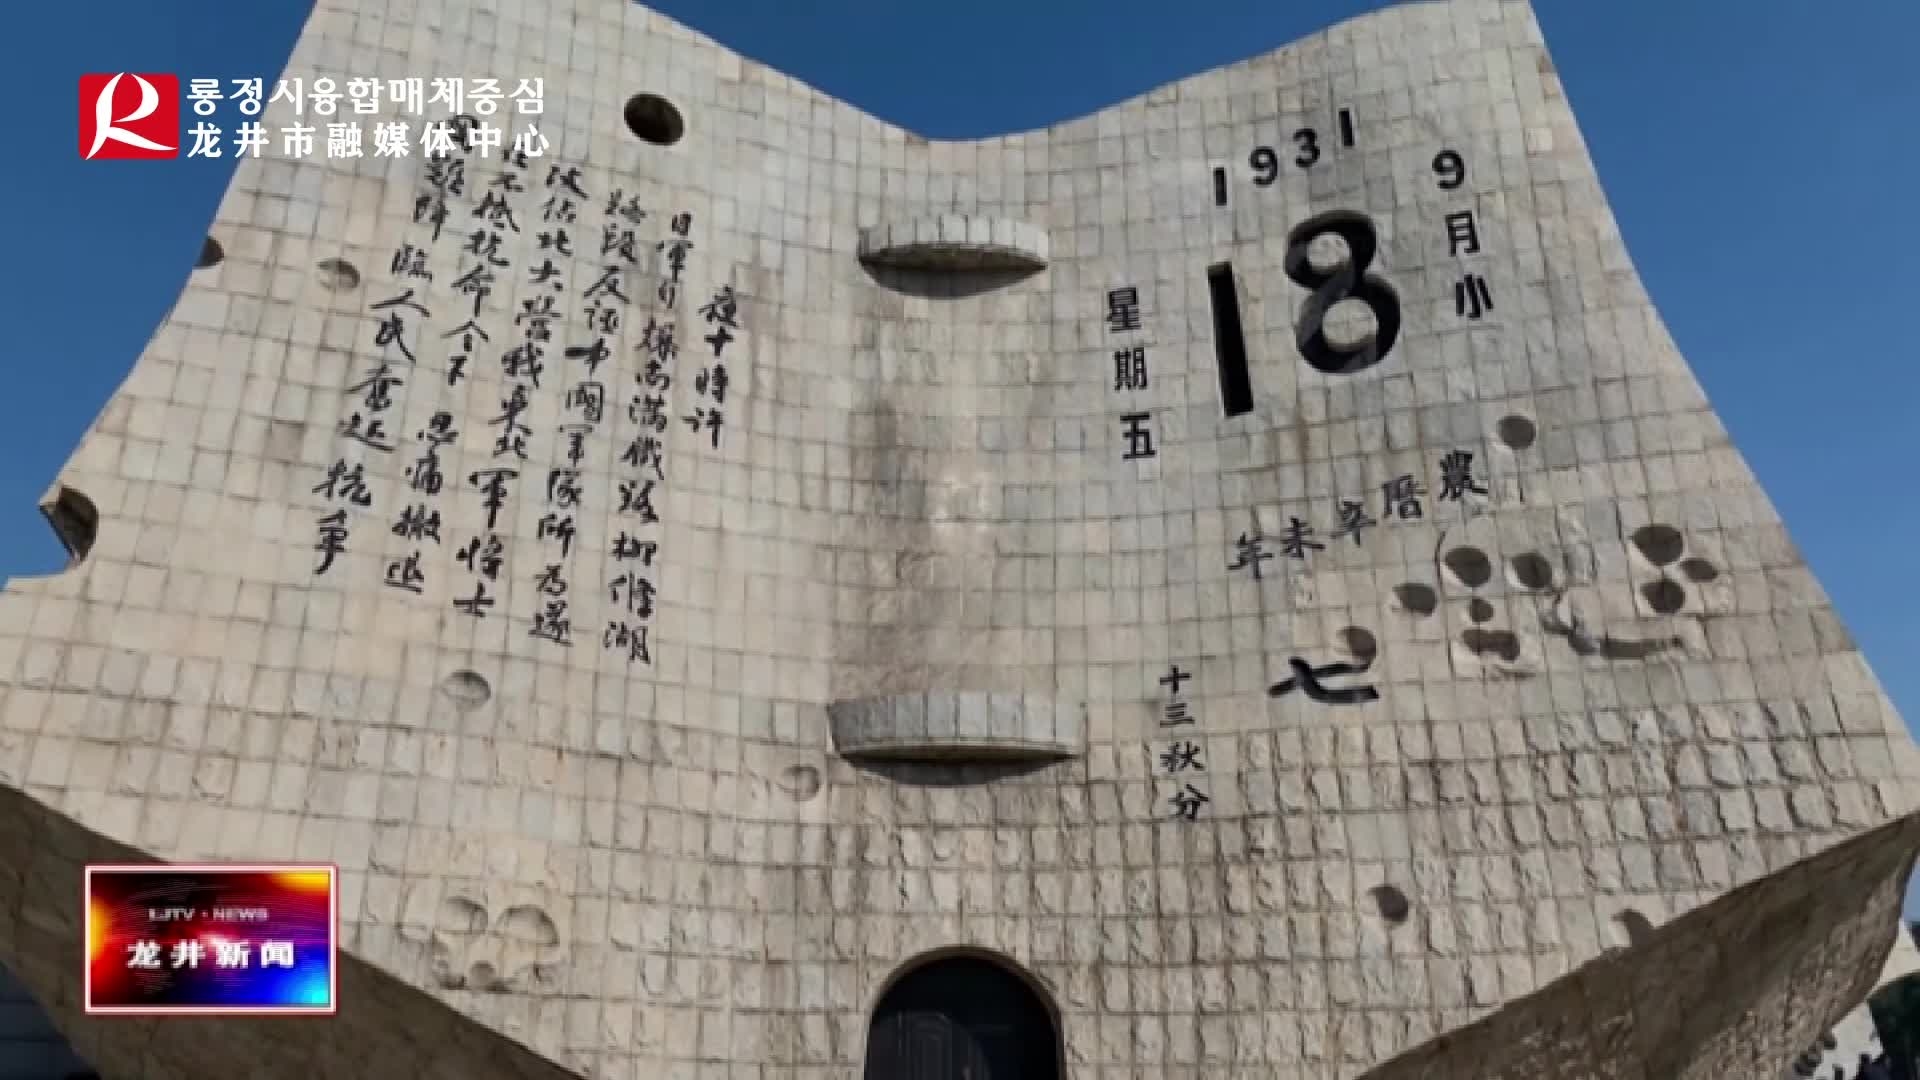 【龙井新闻】勿忘国耻 纪念 “九一八事变” 90周年